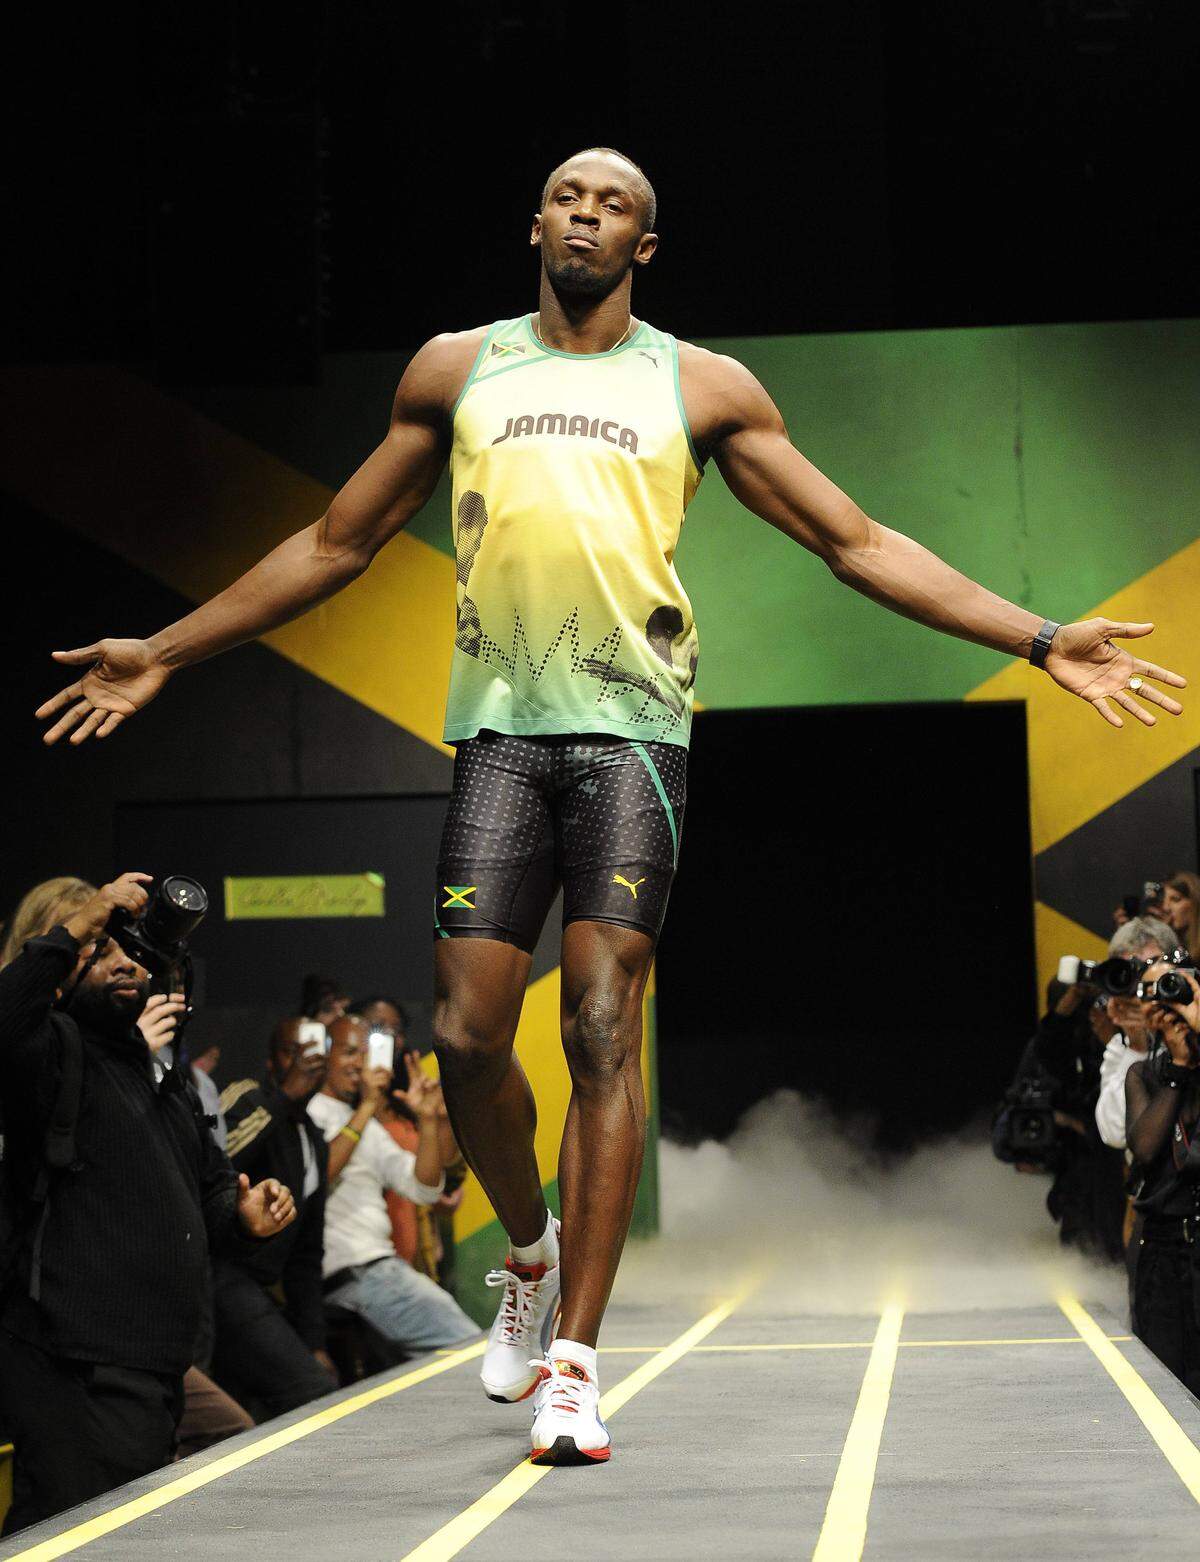 Für die olympischen Sommerspiele in London hat sie für Puma die Uniformen der jamaikanischen Athleten designt. Sprint-Superstar Usain Bolt zeigte bei einer Pressevorführung, wie gut er sich darin fühlt.